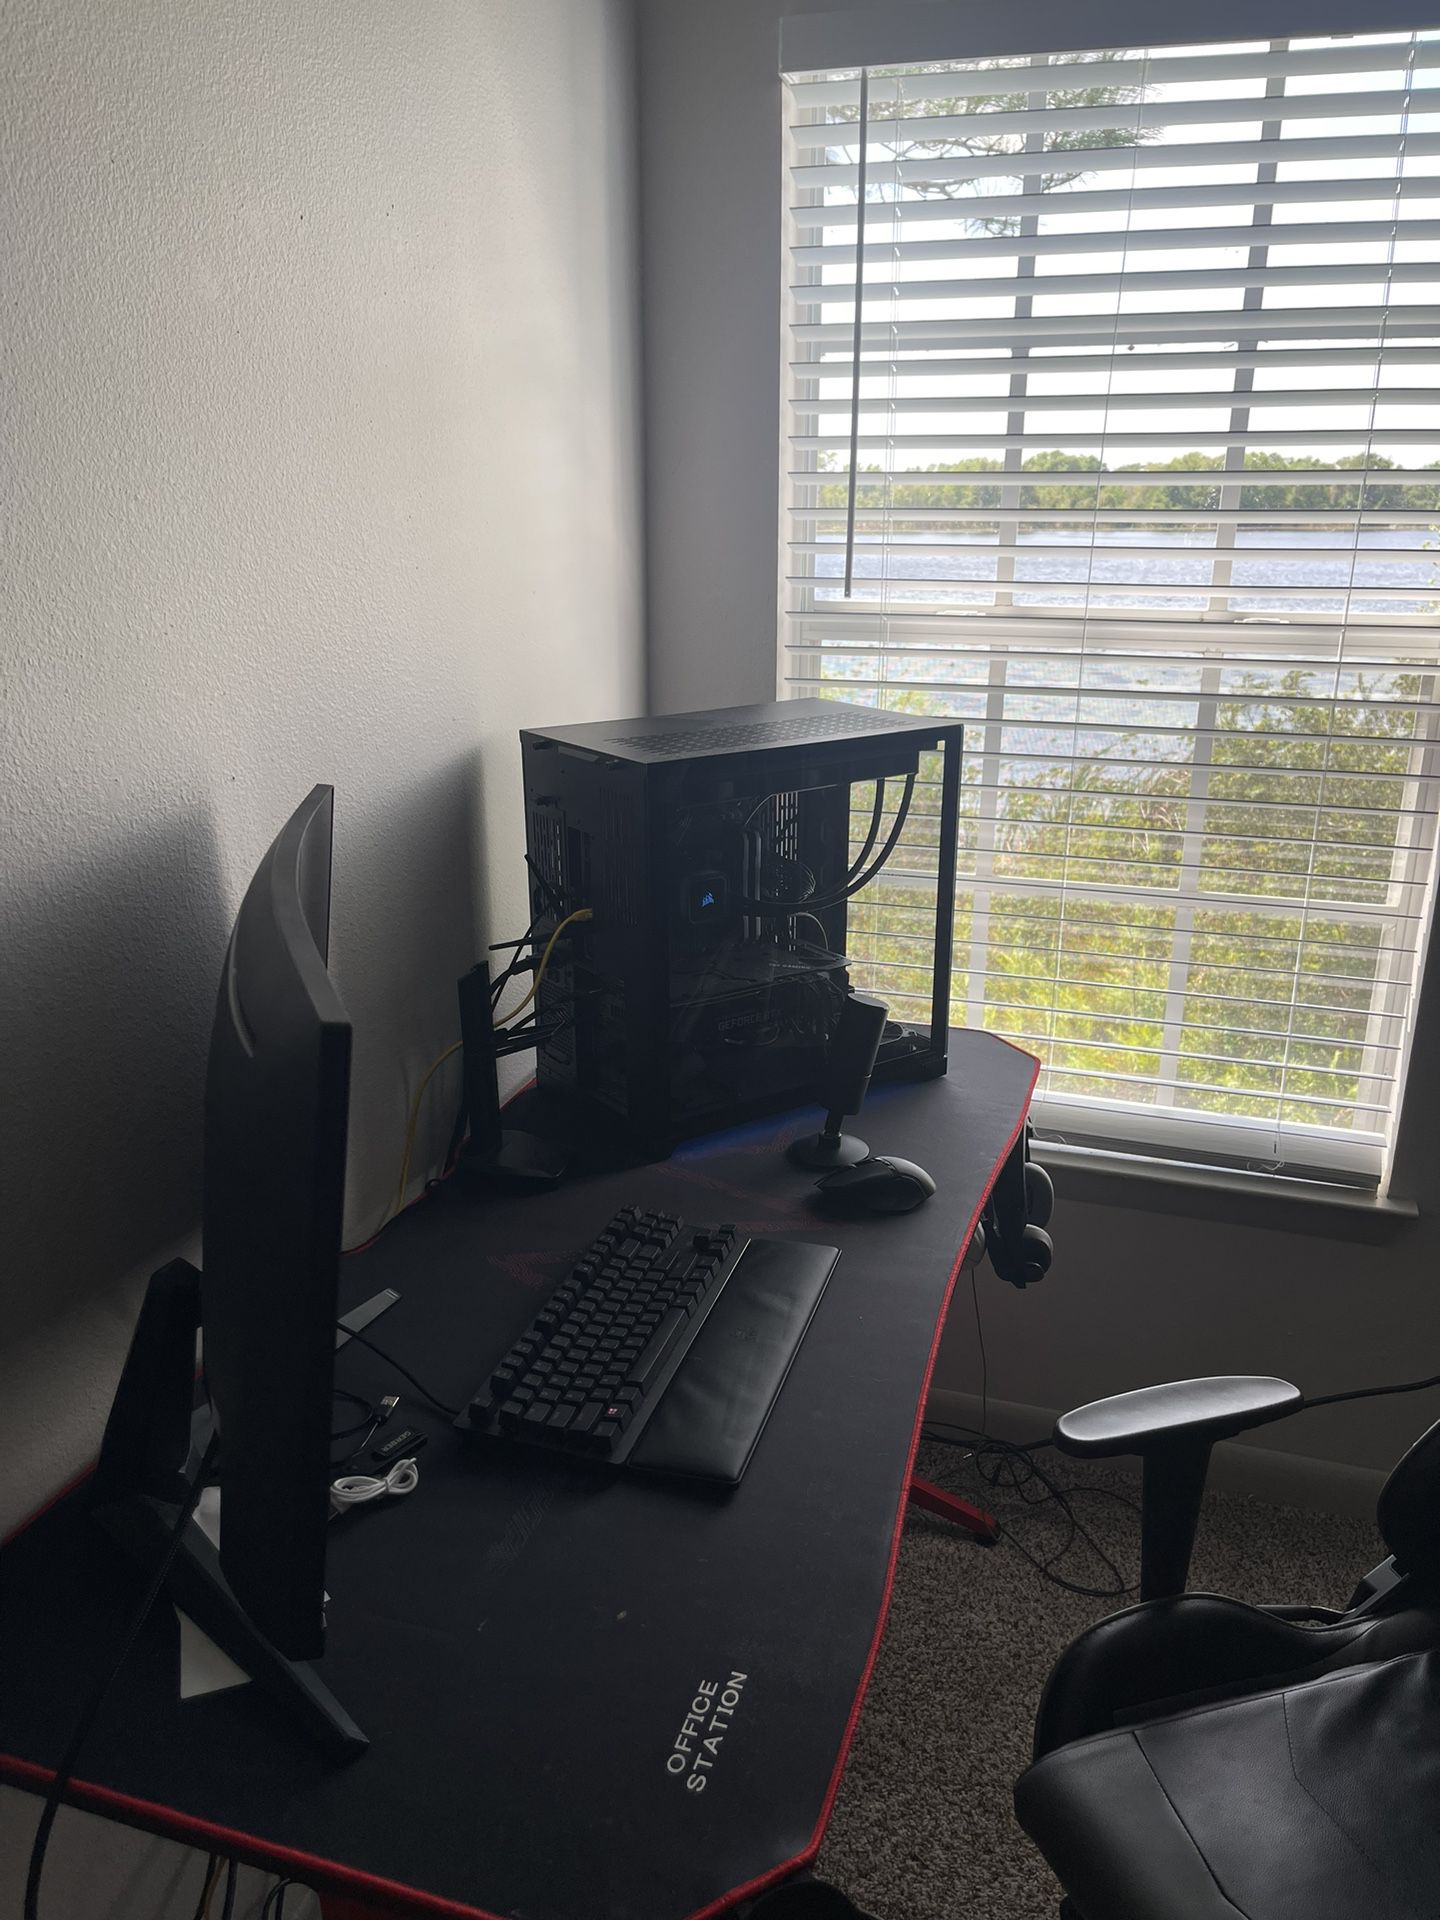 PC Gaming setup